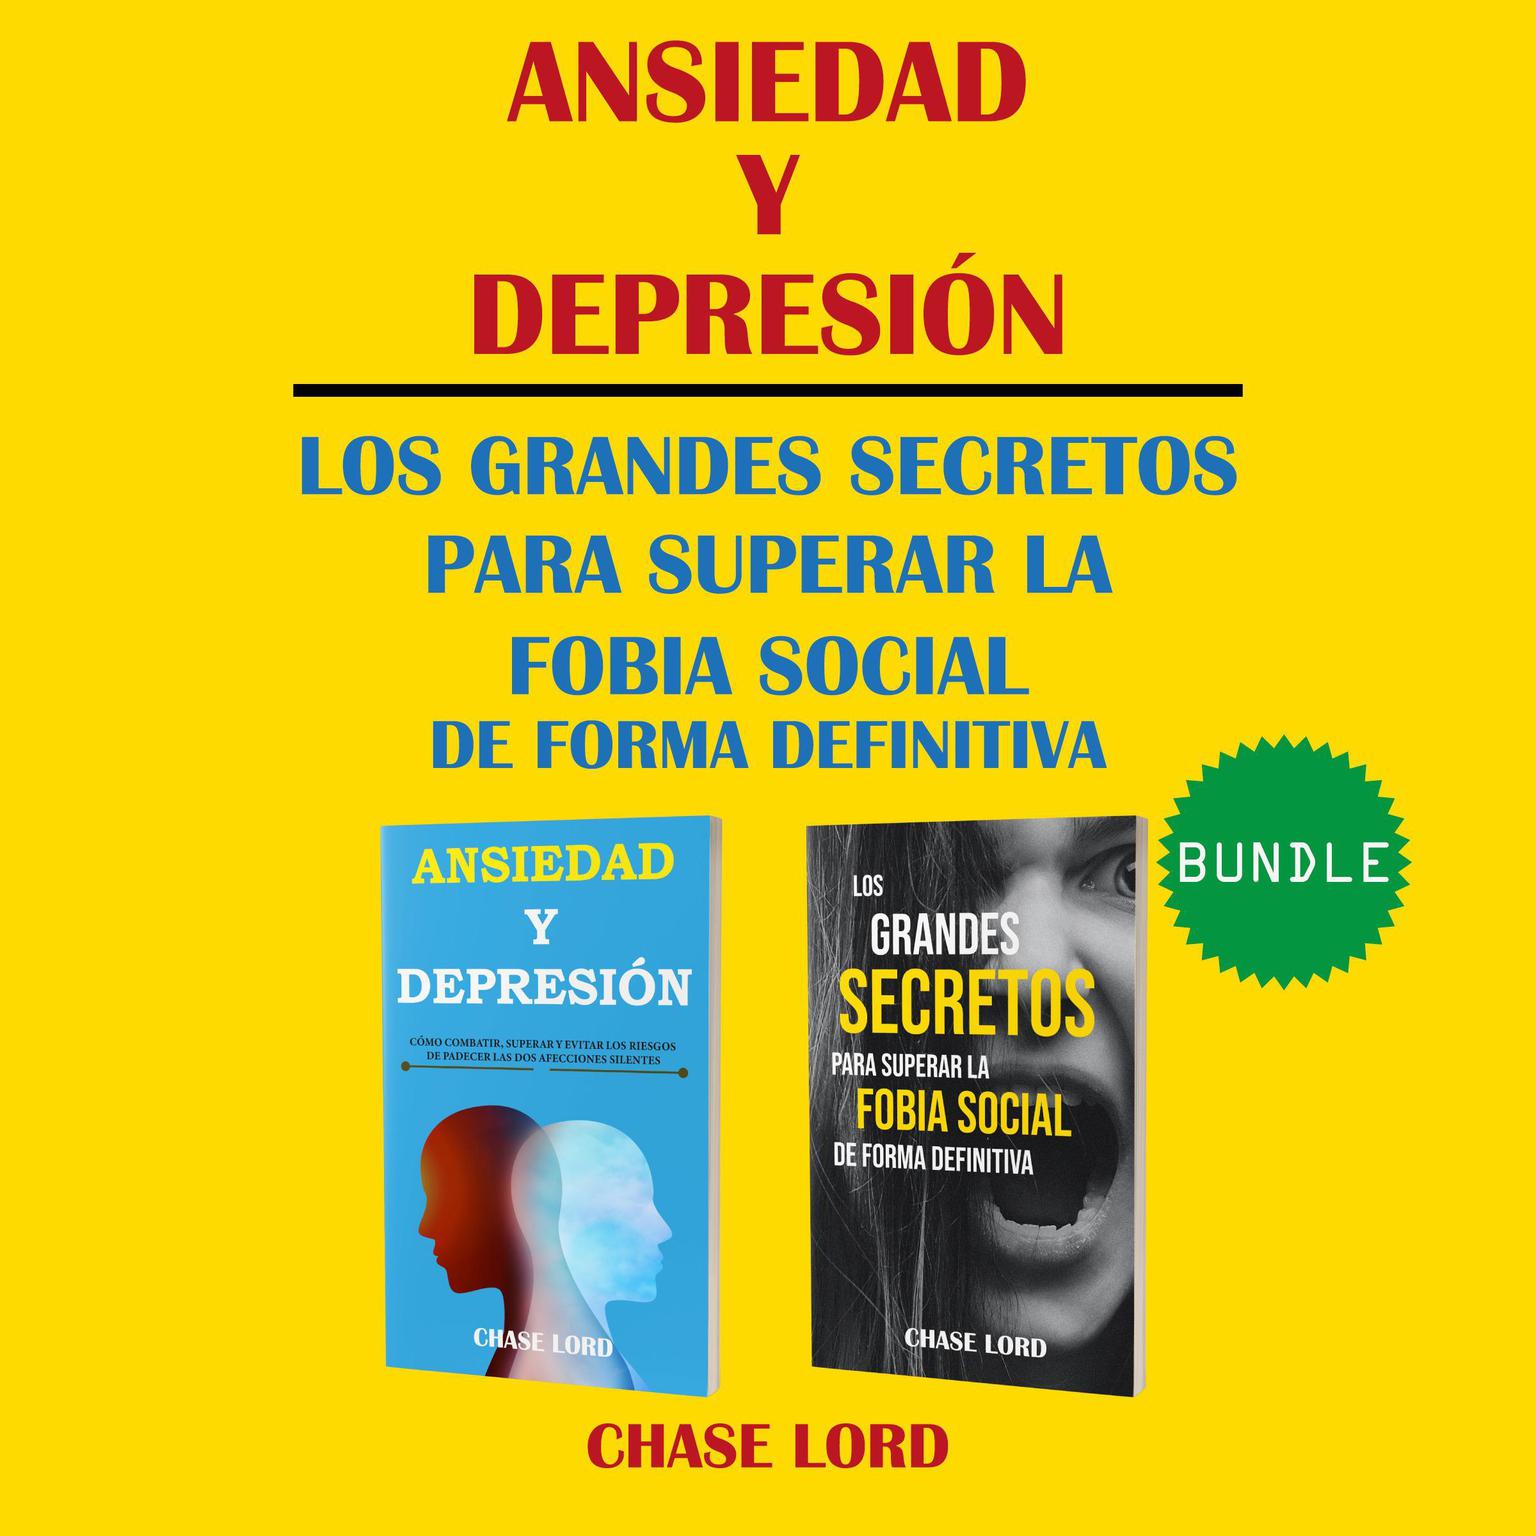 Ansiedad y Depresión. Los Grandes Secretos para superar la Fobia Social de forma definitiva. Audiobook, by Chase Lord